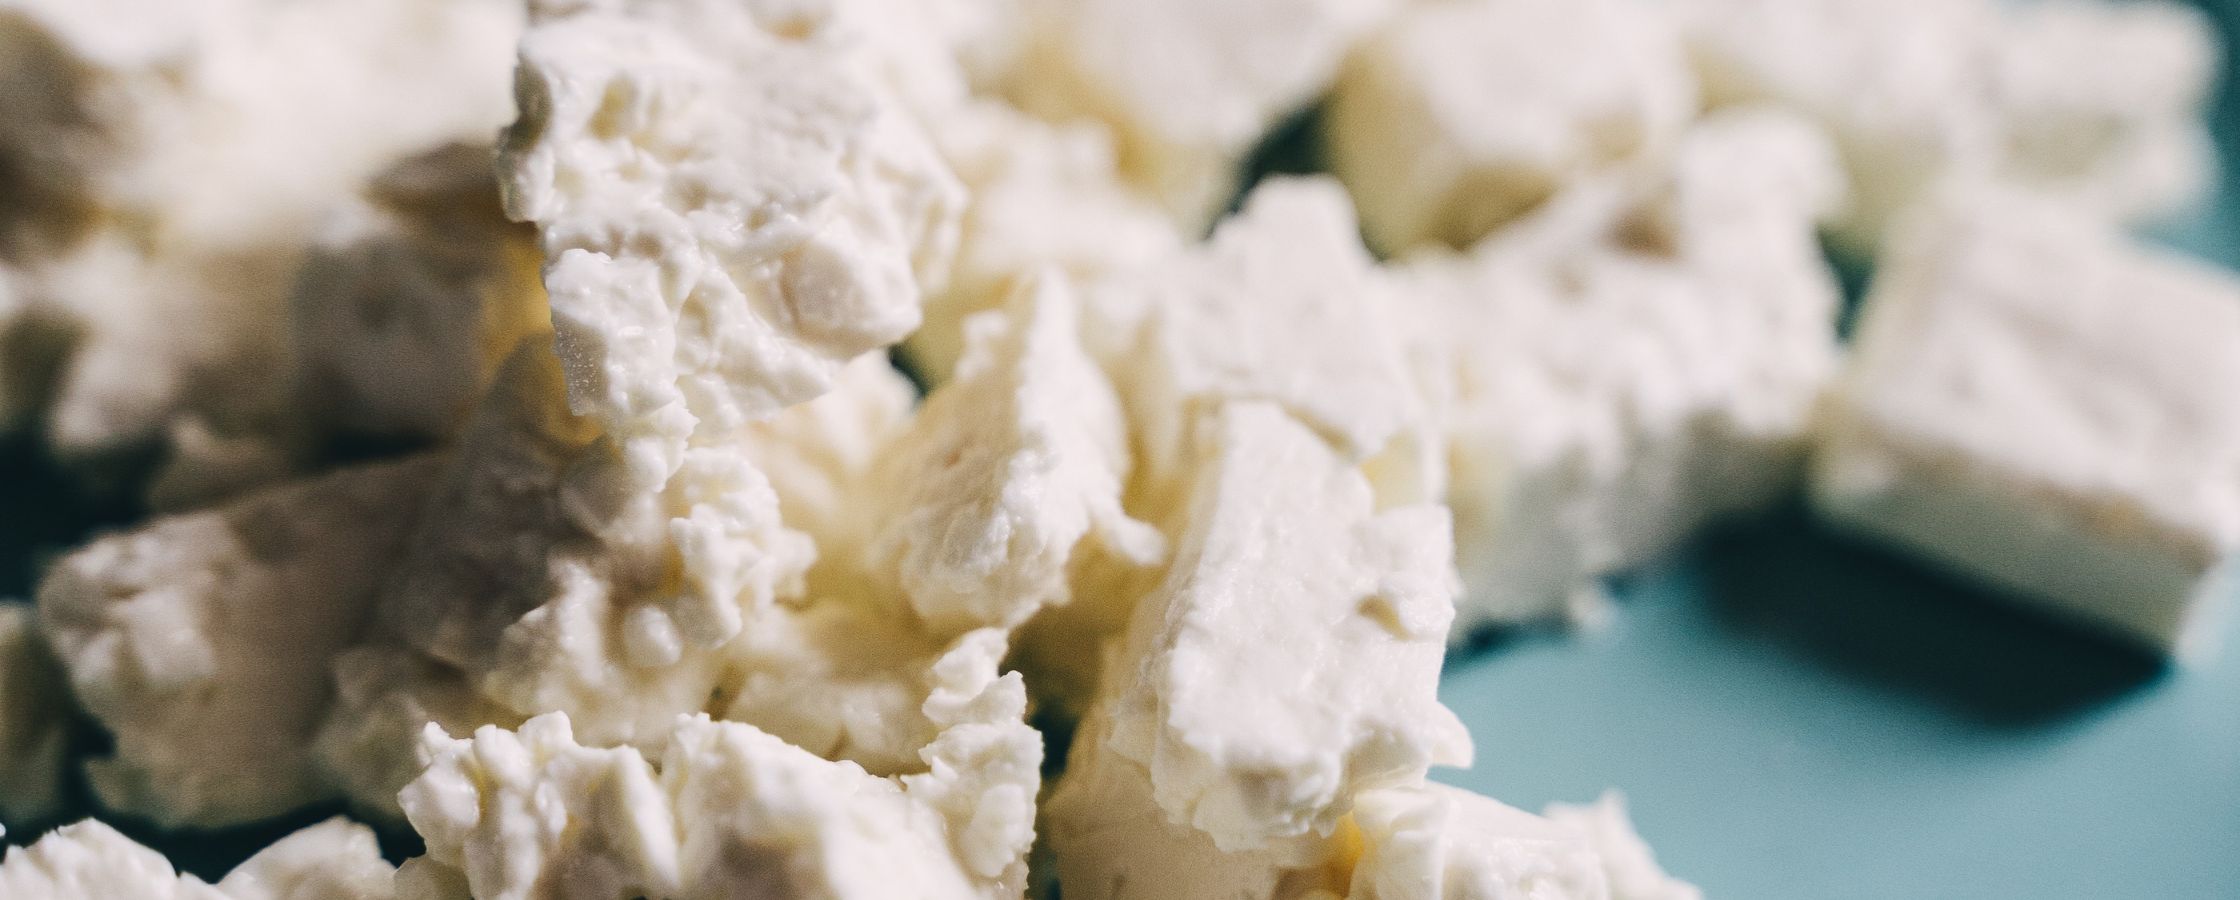 Queijo Feta: Conheça tudo sobre um dos queijos mais famosos do mundo. (5 min)